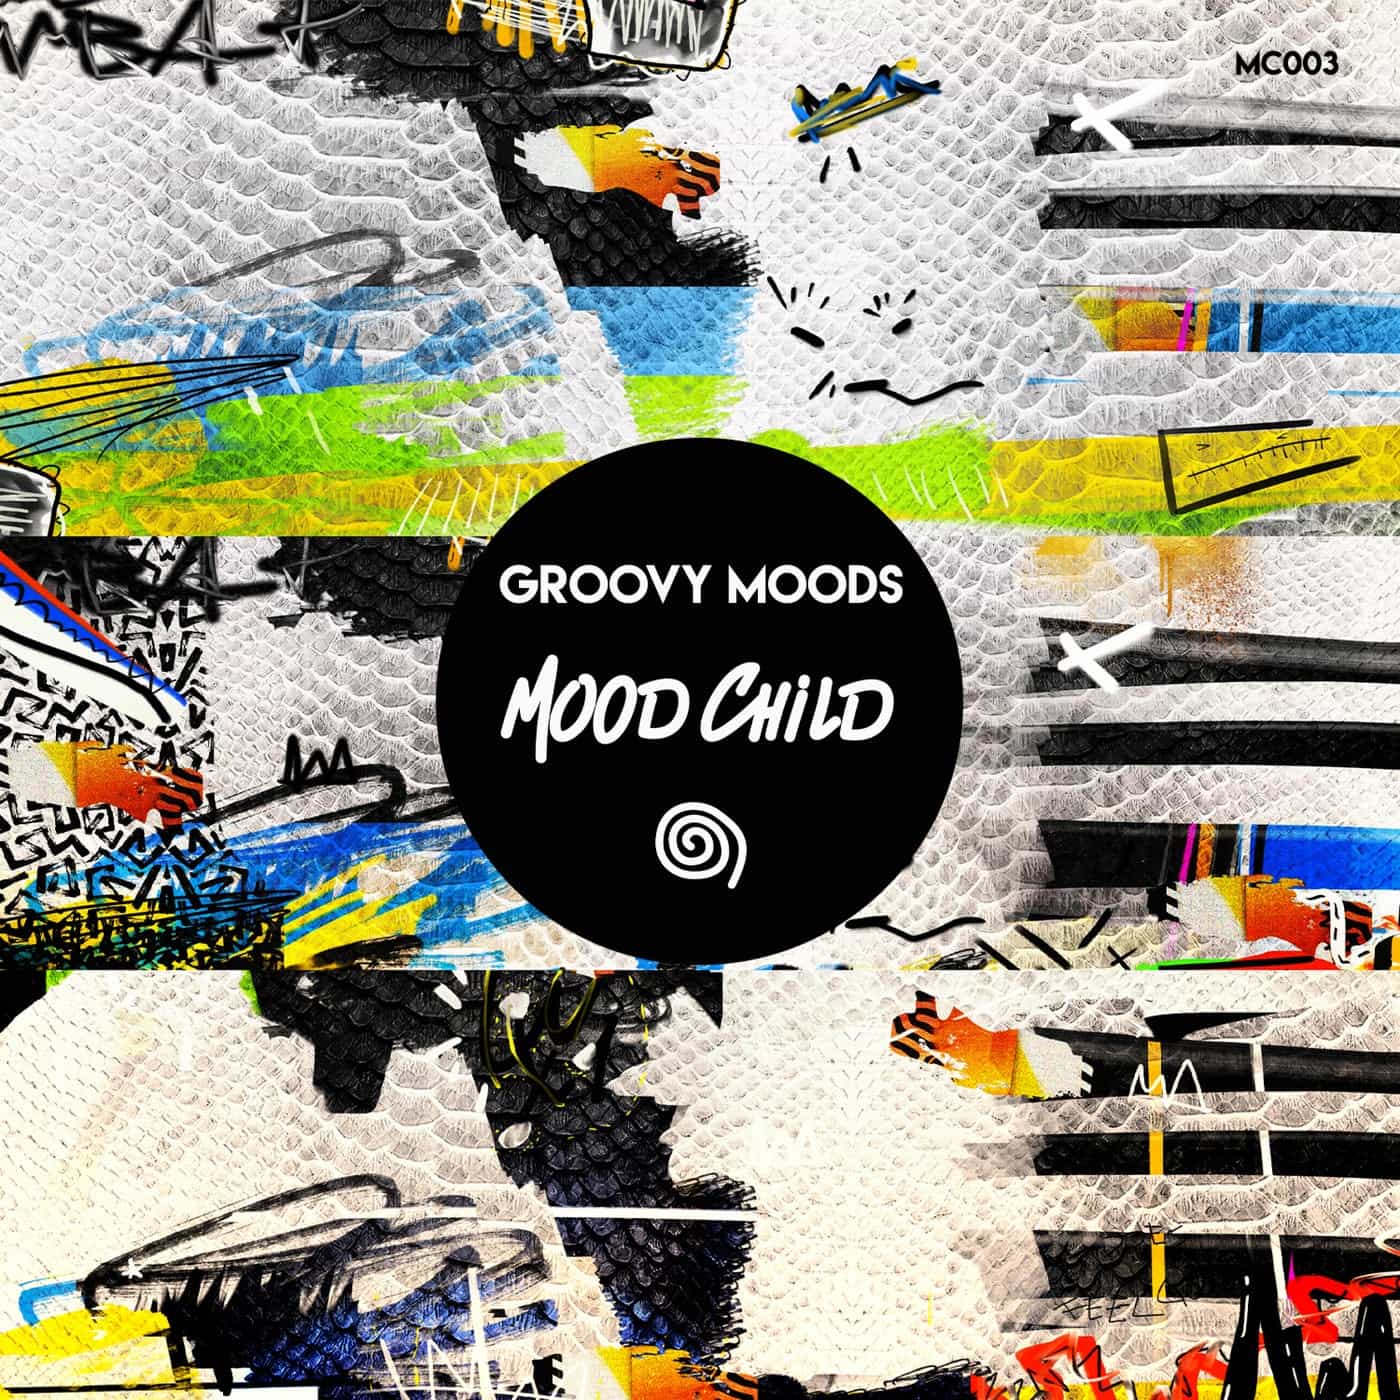 image cover: VA - Groovy Moods on Mood Child